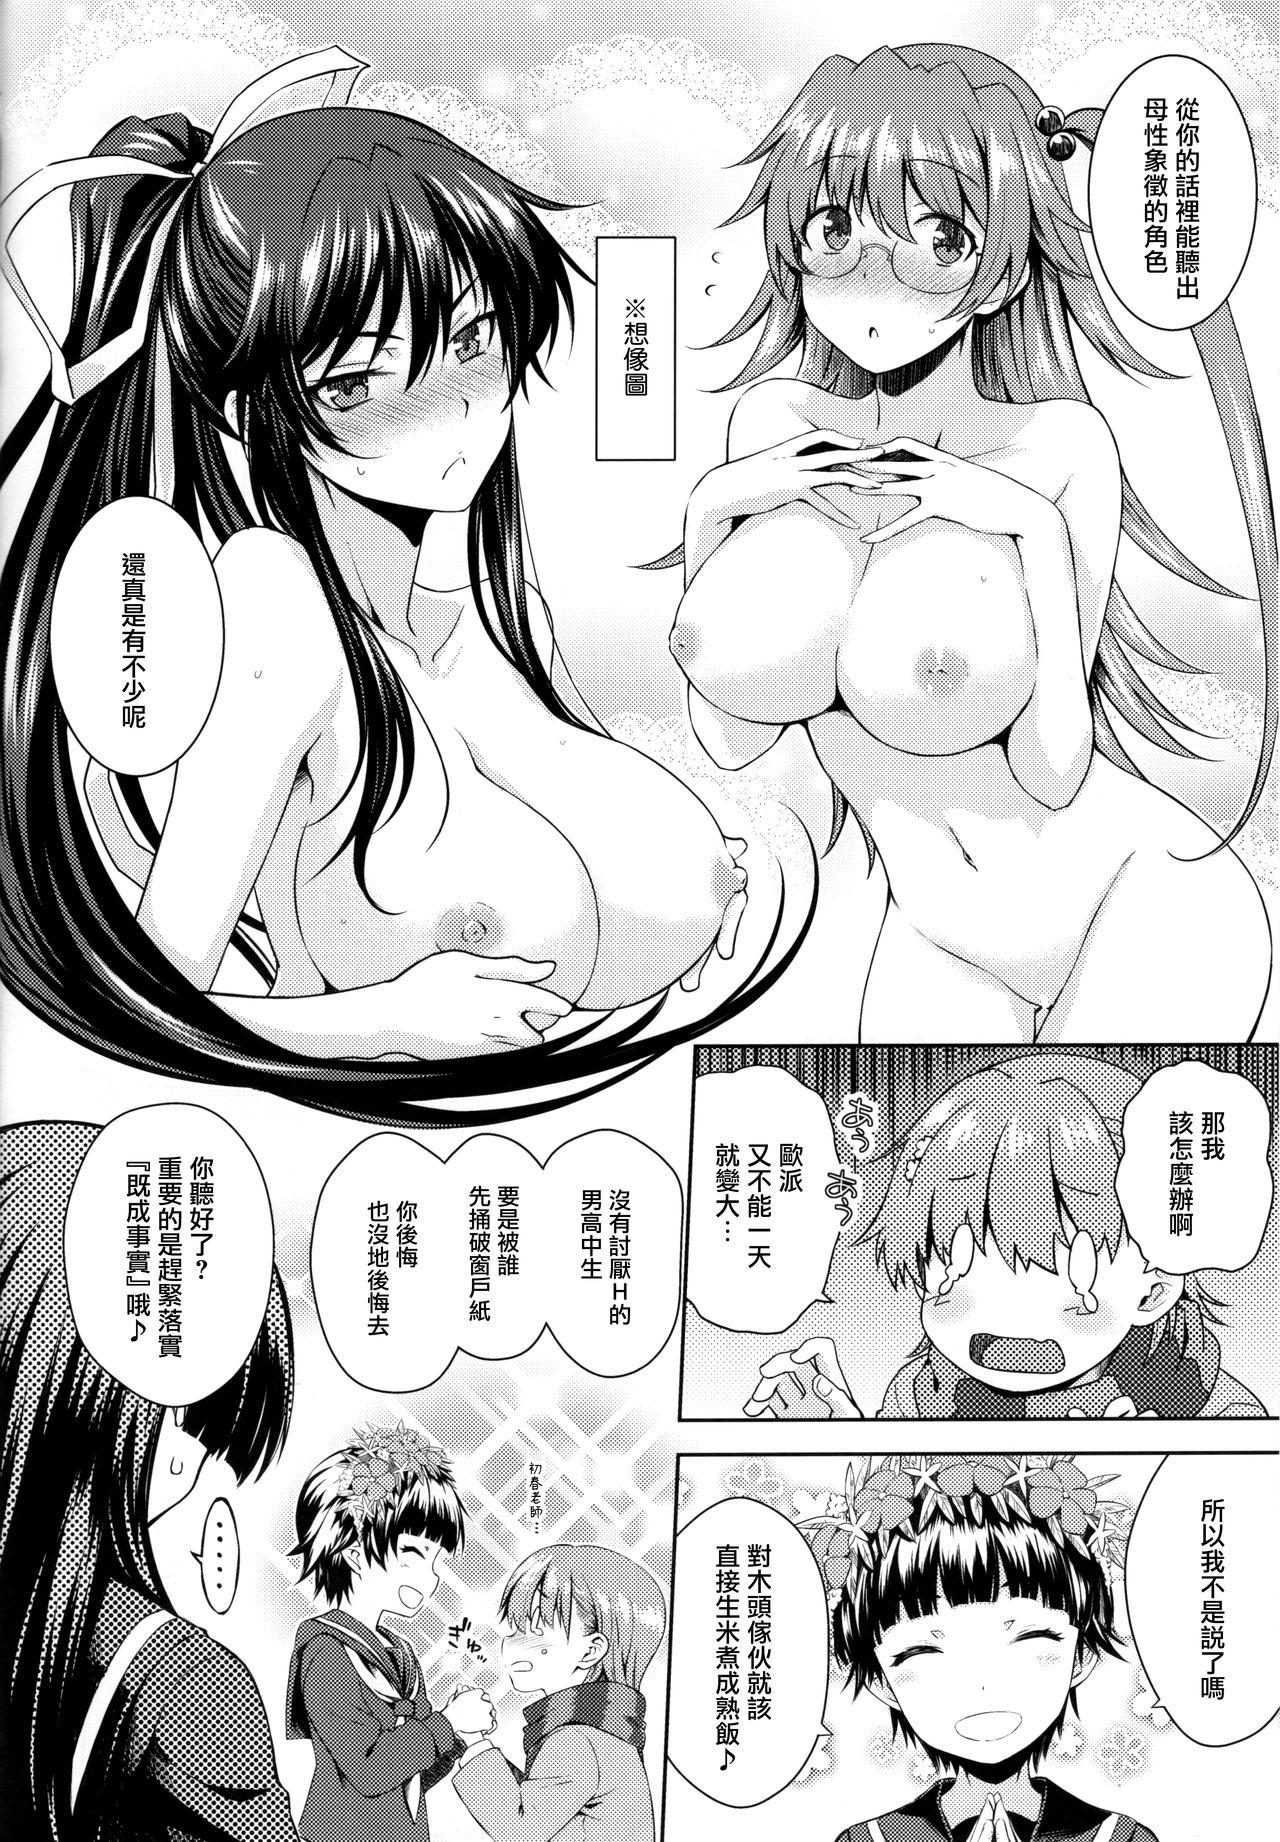 Suck Precious Gift - Toaru kagaku no railgun Porno Amateur - Page 11